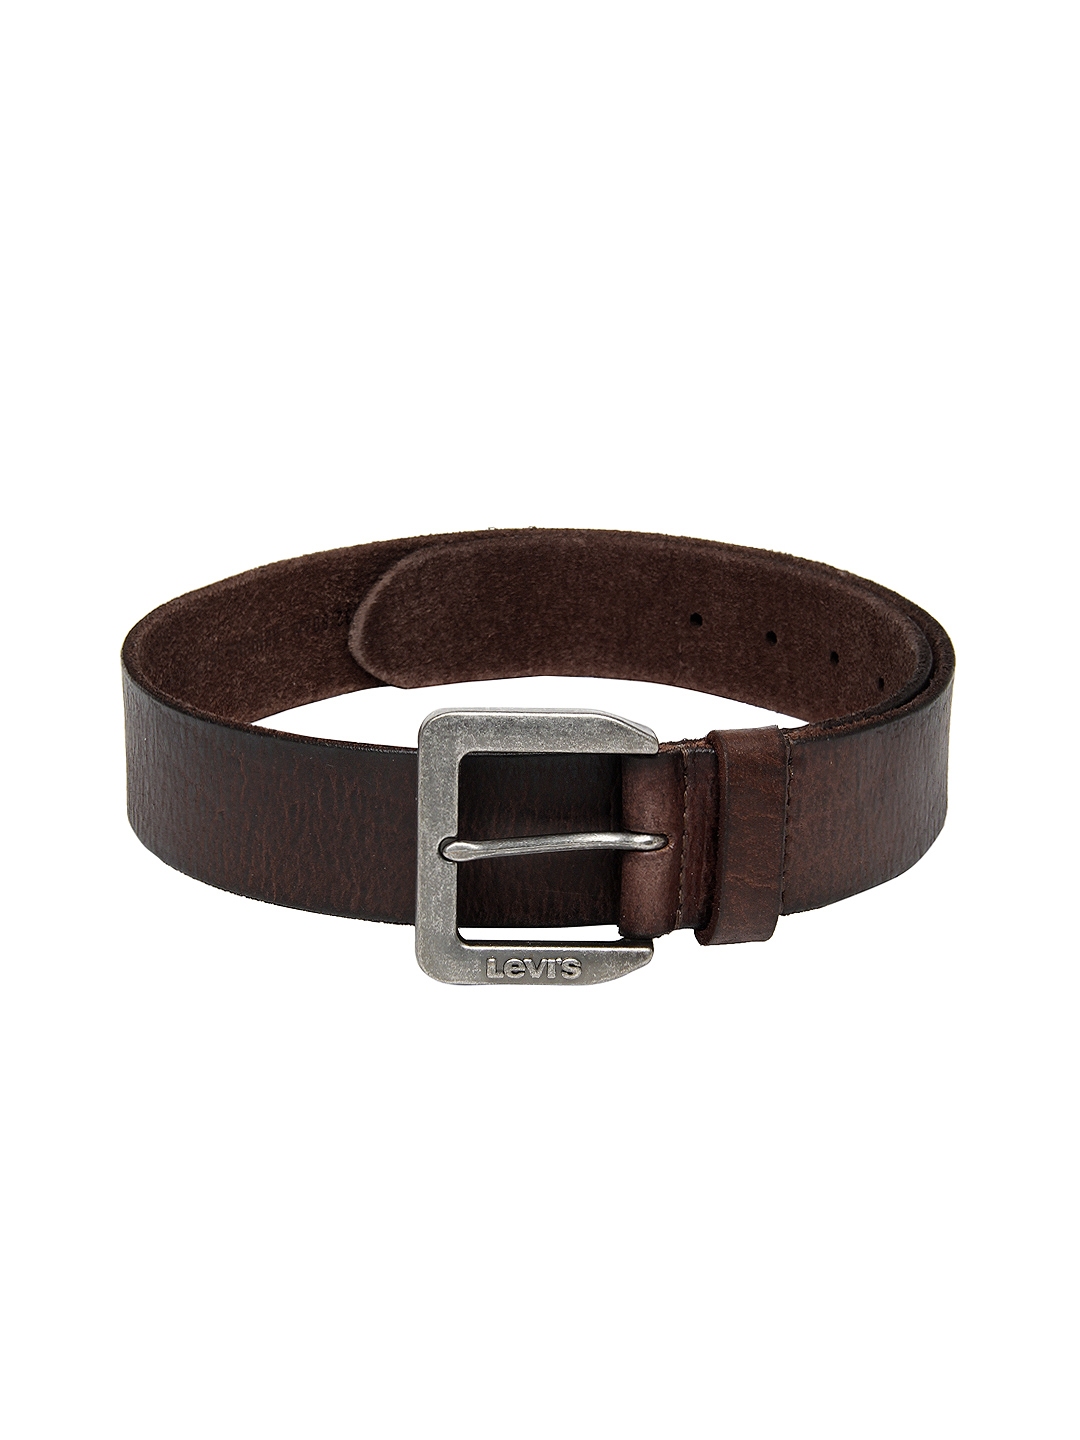 Buy Levis Men Brown Leather Belt - Belts for Men 428948 | Myntra